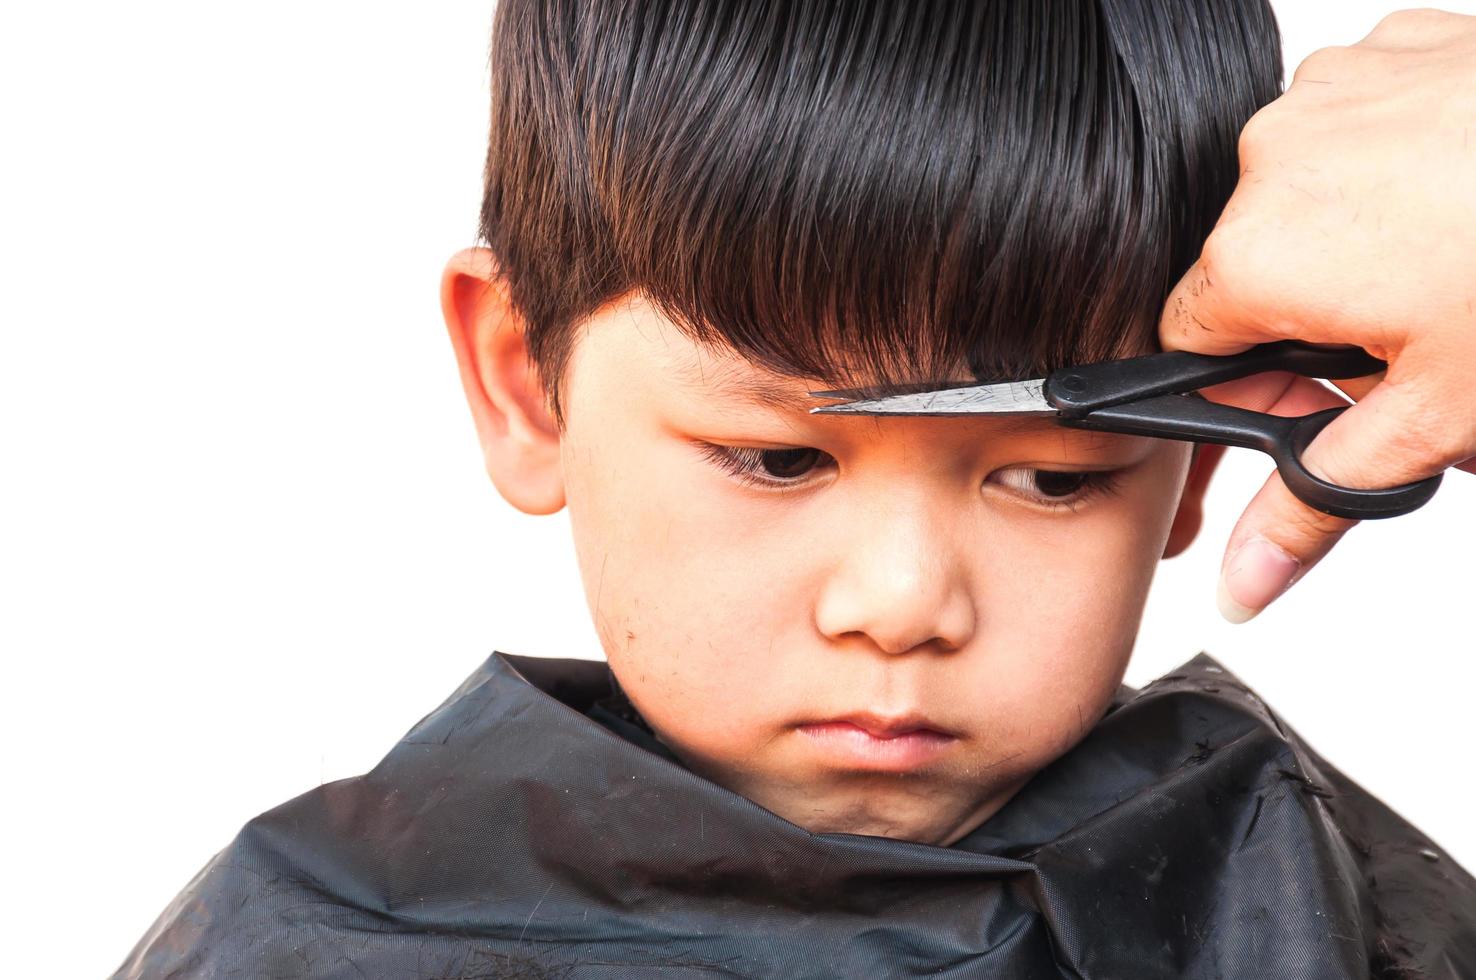 en pojke klipps sitt hår av frisör över vit bakgrund, fokusera på hans högra öga foto